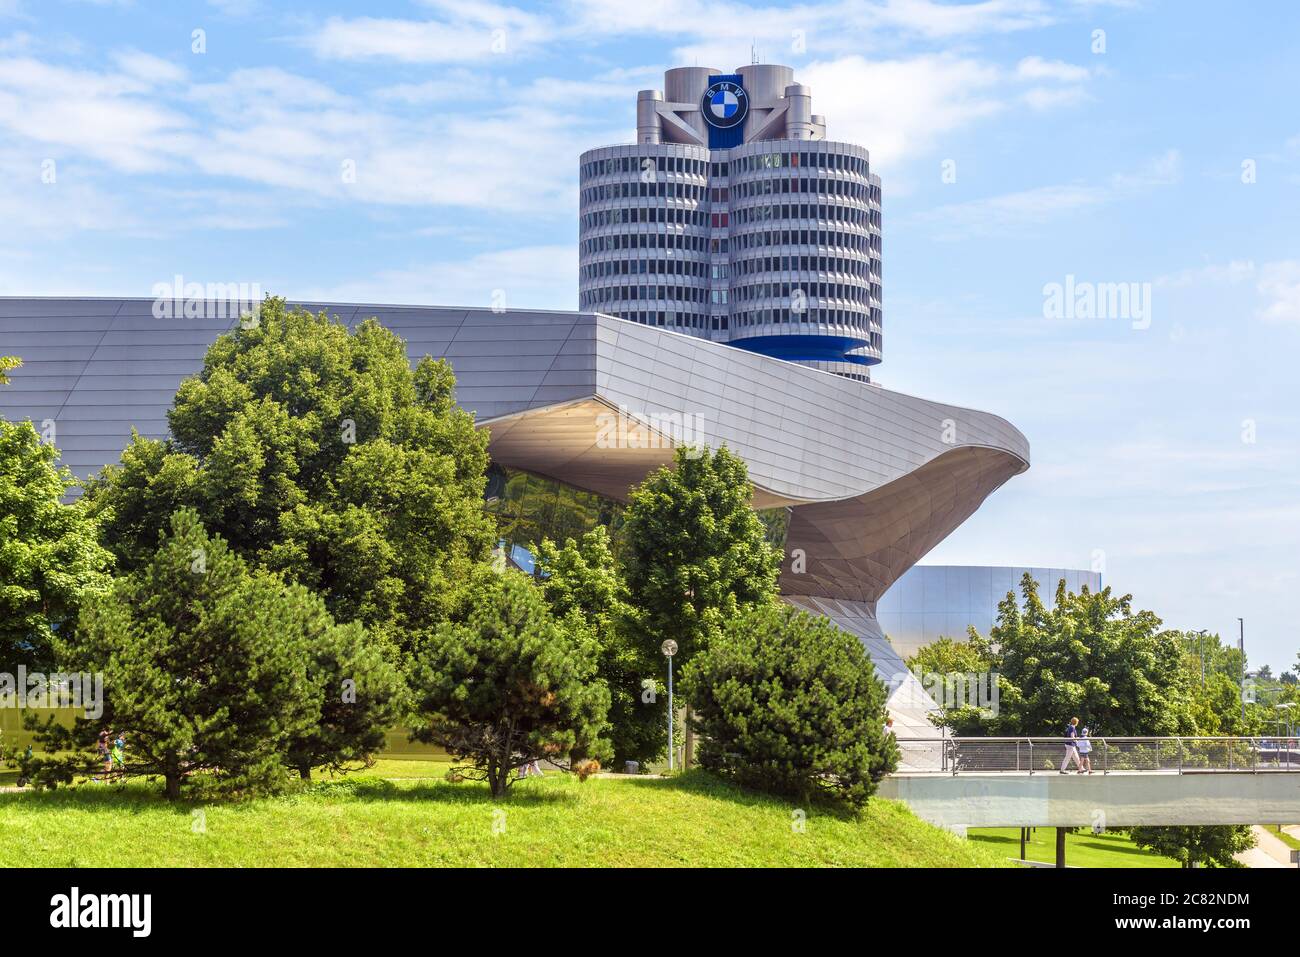 München, Deutschland - 2. Aug 2019: Die BMW-Weltzentrale oder BMW-Vierzylinder-Gebäude in München, Bayern. Es ist ein berühmtes Wahrzeichen der Stadt. Landschaftlich schöner Blick Stockfoto